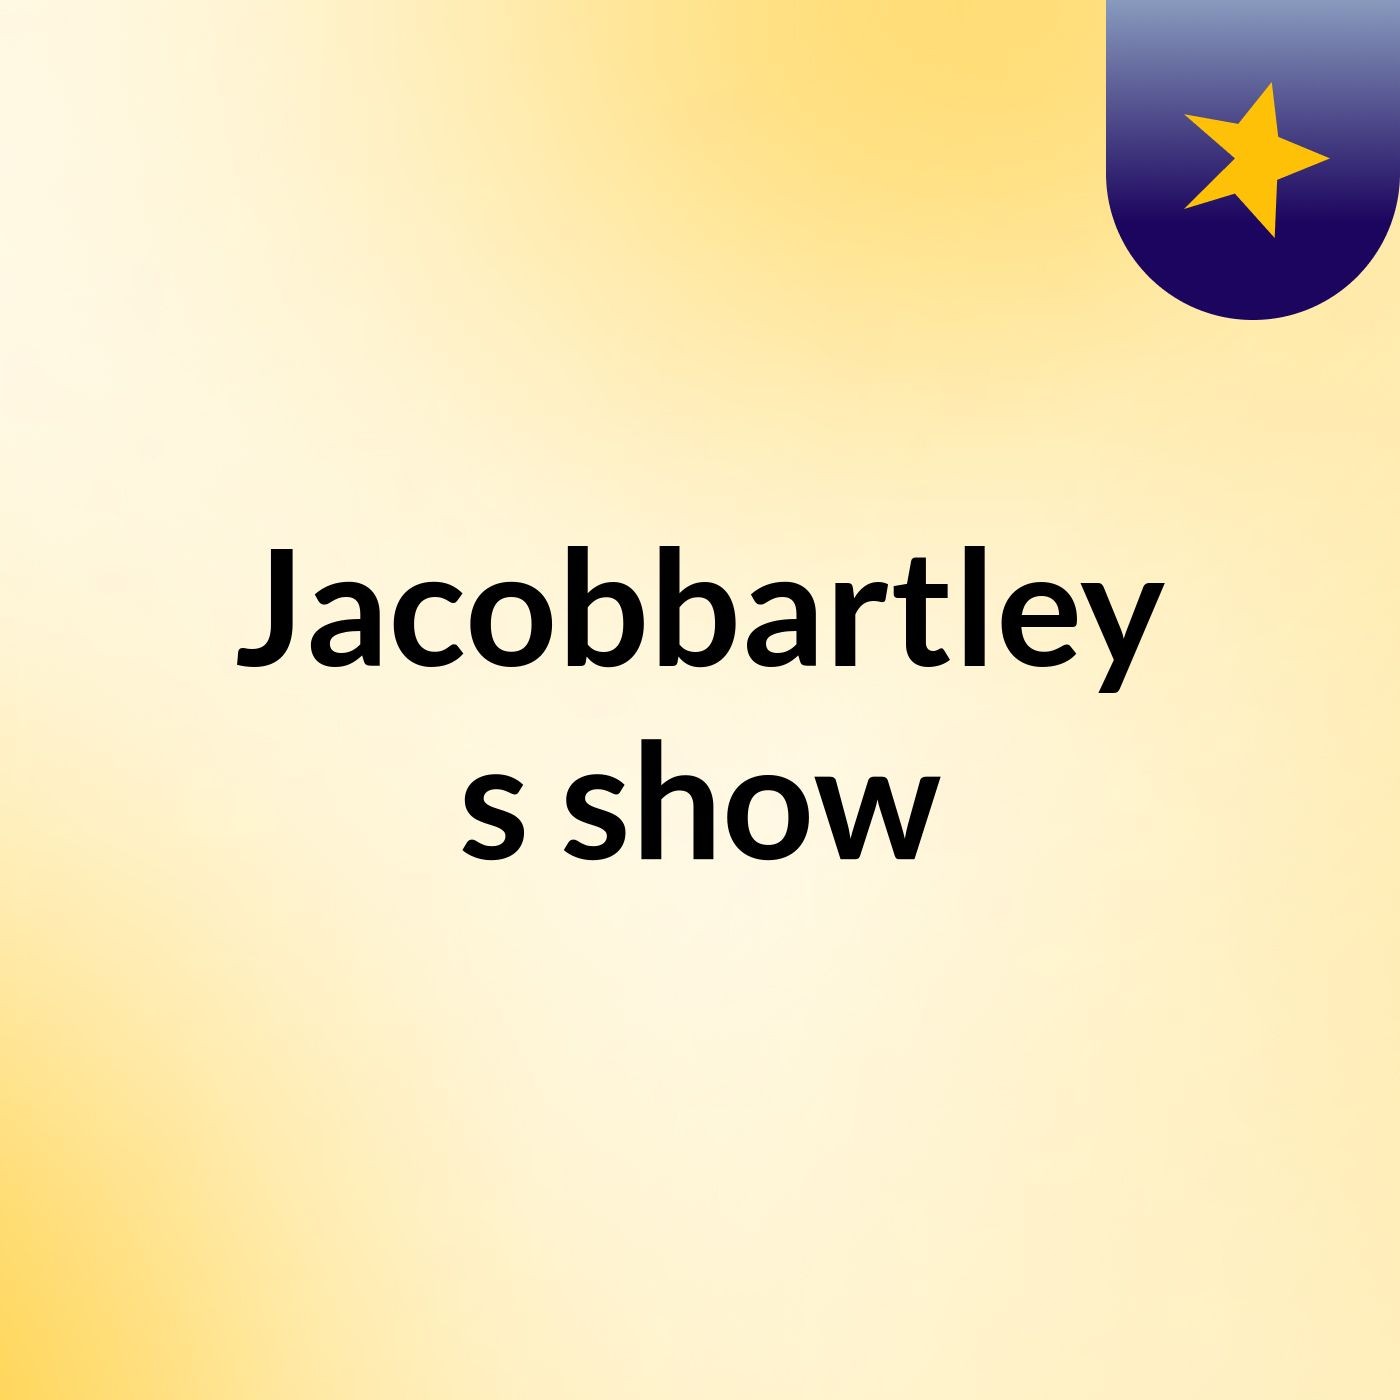 Episode 19 - Jacobbartley's show